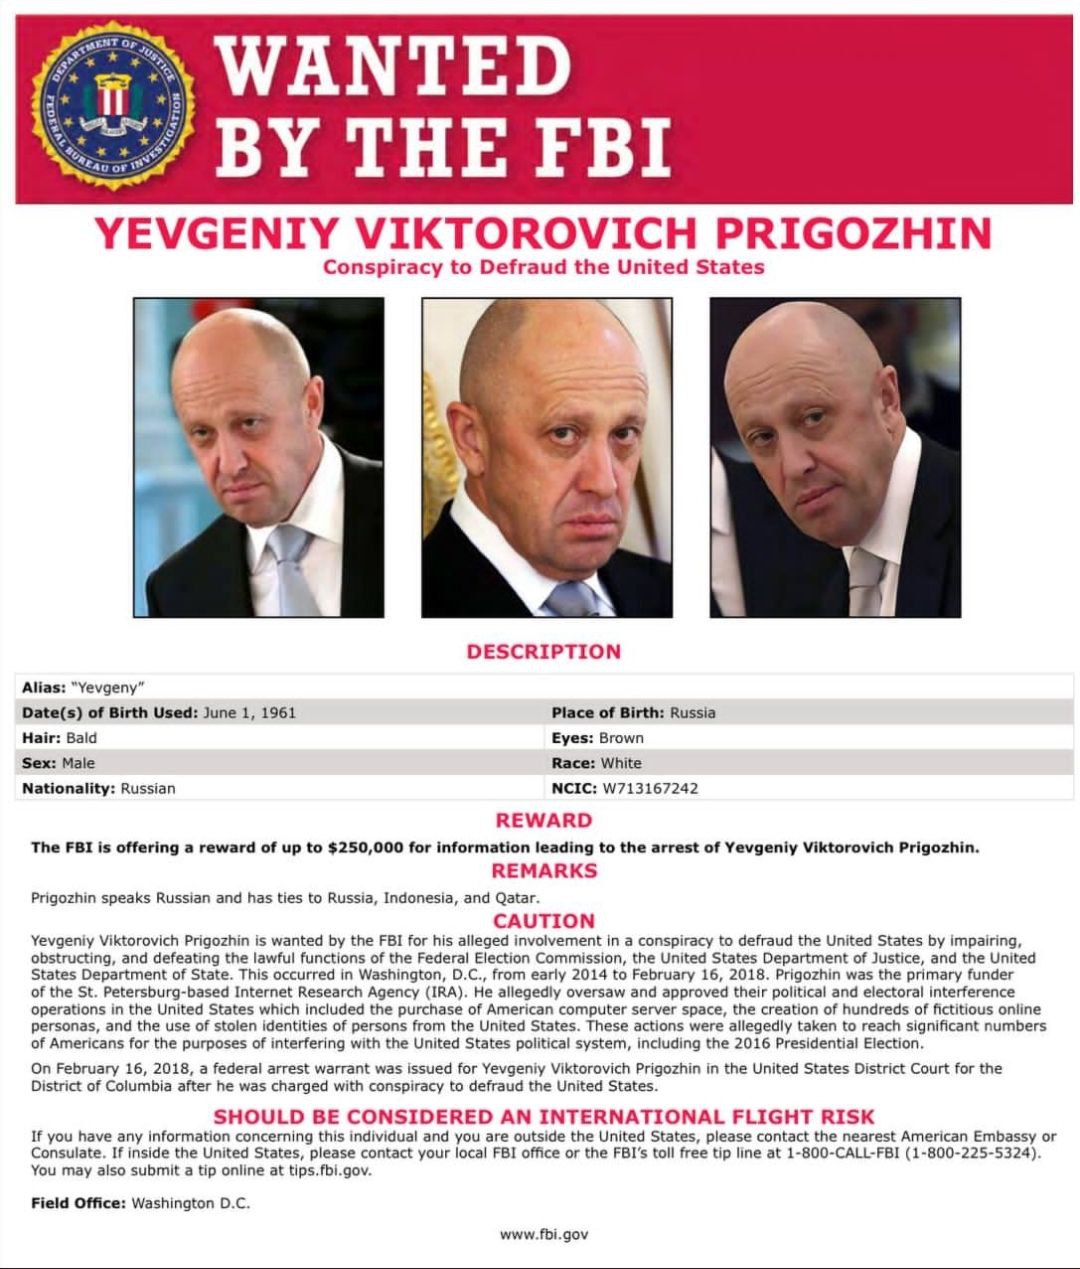 ה-FBI הציב פרס של רבע מיליון דולר על יבגני פריגוז'ין